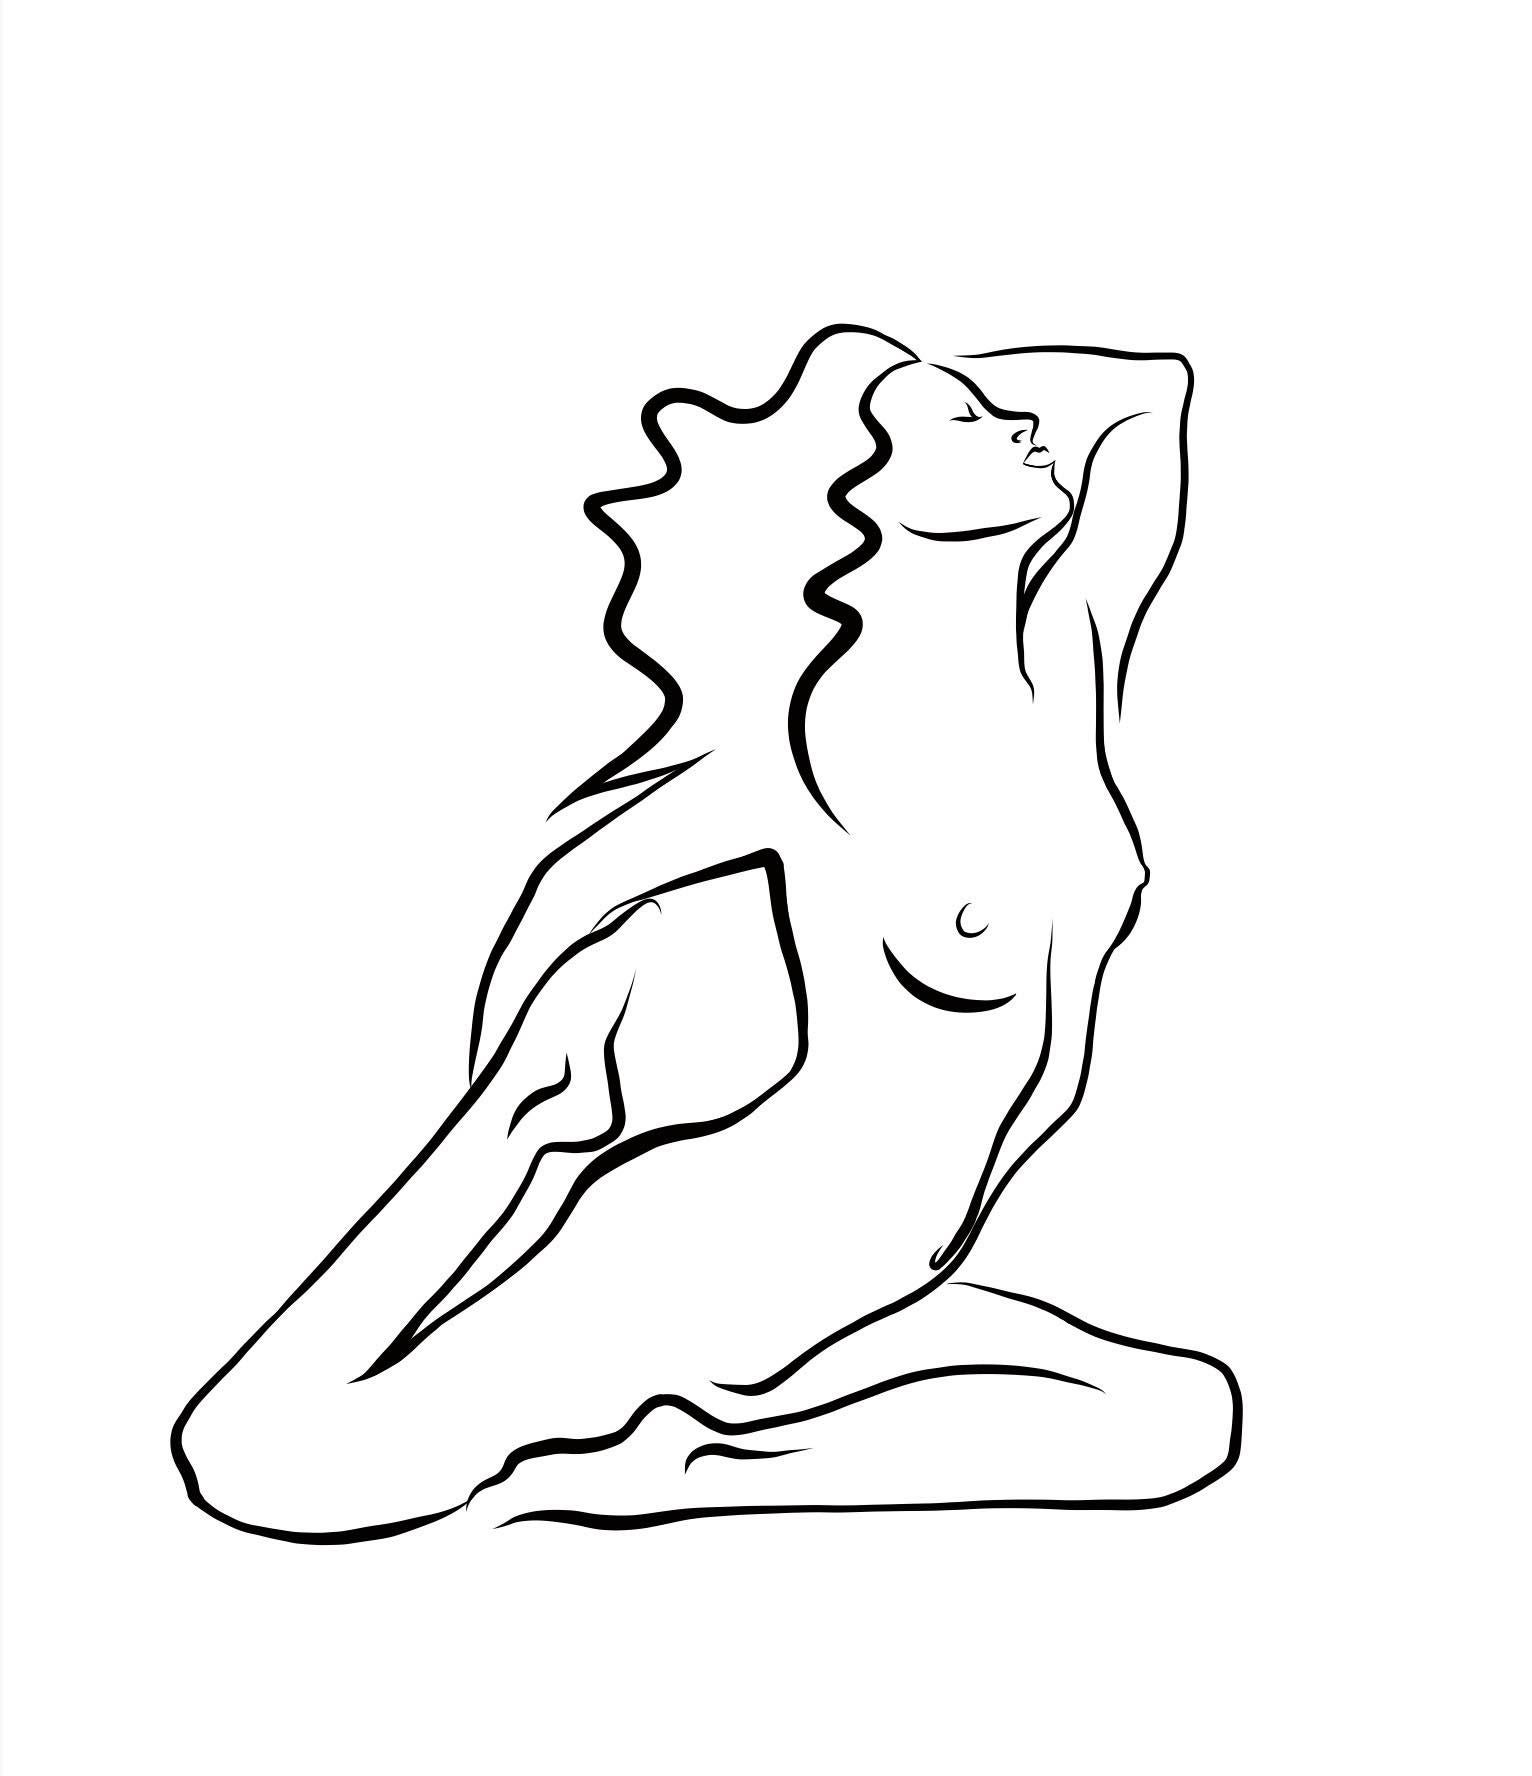 Haiku #28, 1/50 - Digital Vector Drawing Kneeling Female Nude Woman Figure - Art by Michael Binkley